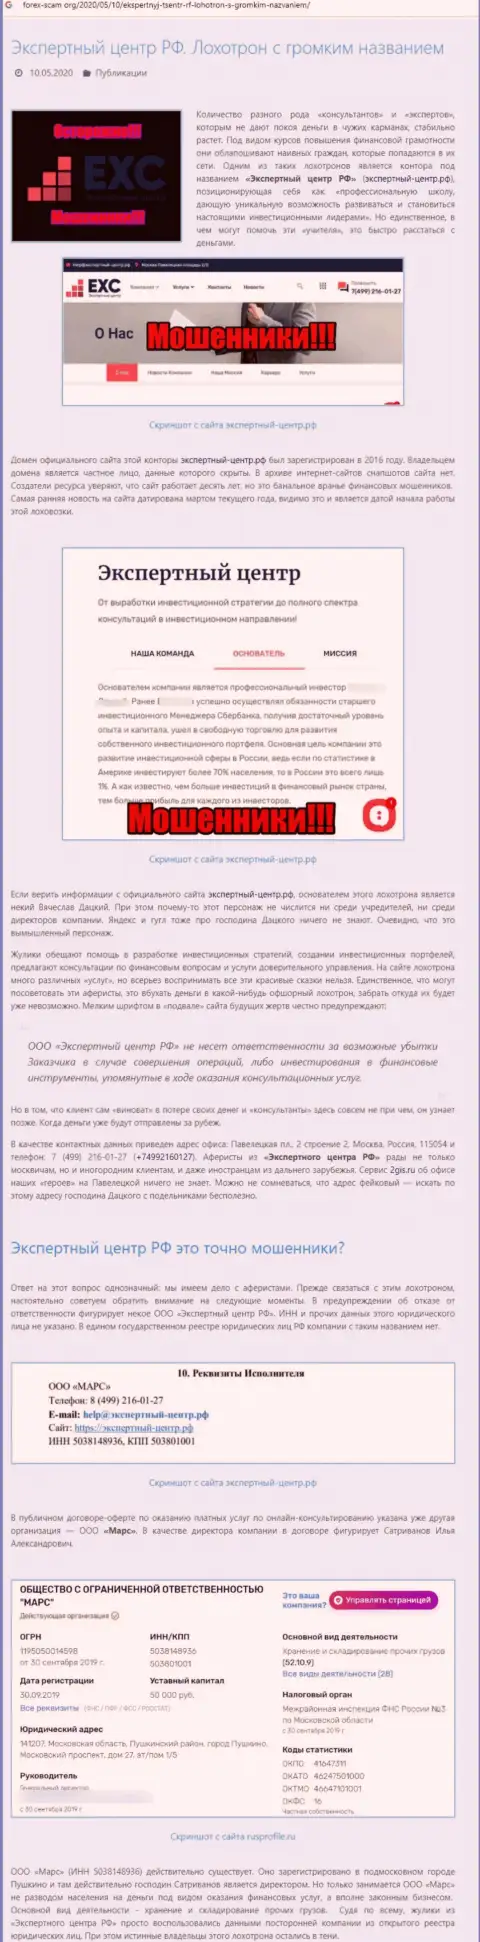 Экспертный Центр России - ОБМАНЩИК ! Схемы грабежа (обзор проделок)